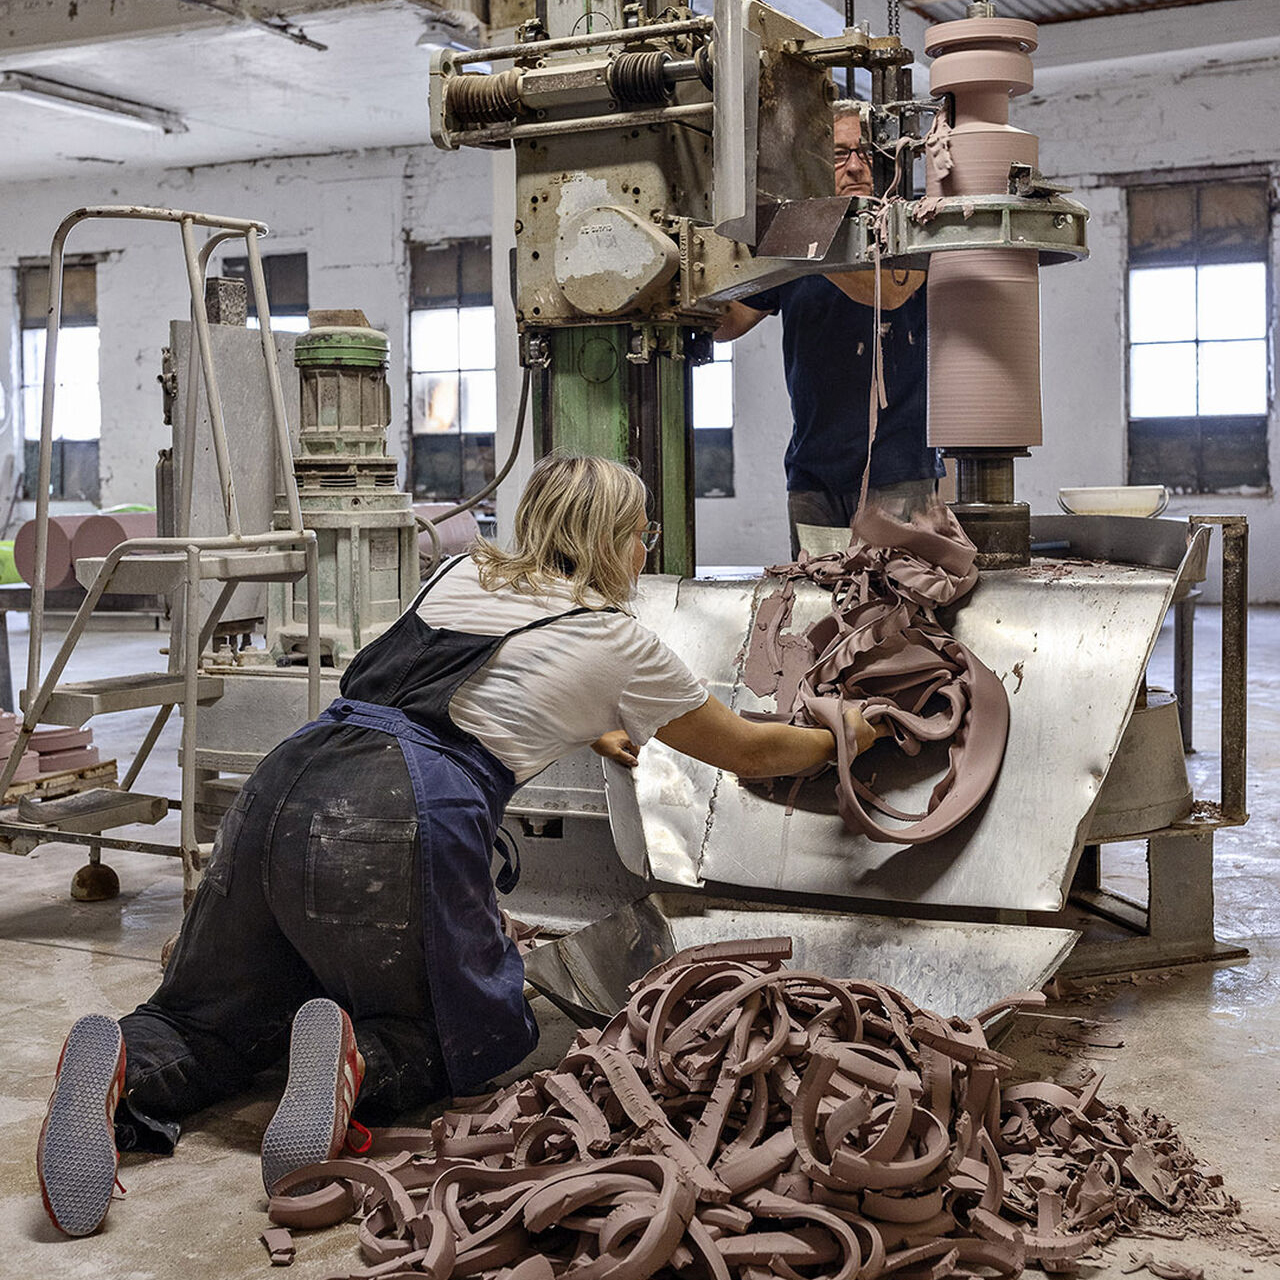 Heidi Bjørgan (NO) undersöker den estetiska potentialen i förbisedda föremål, bland annat restmaterial från fabrikens porslinsproduktion. Foto: Dorte Krogh.